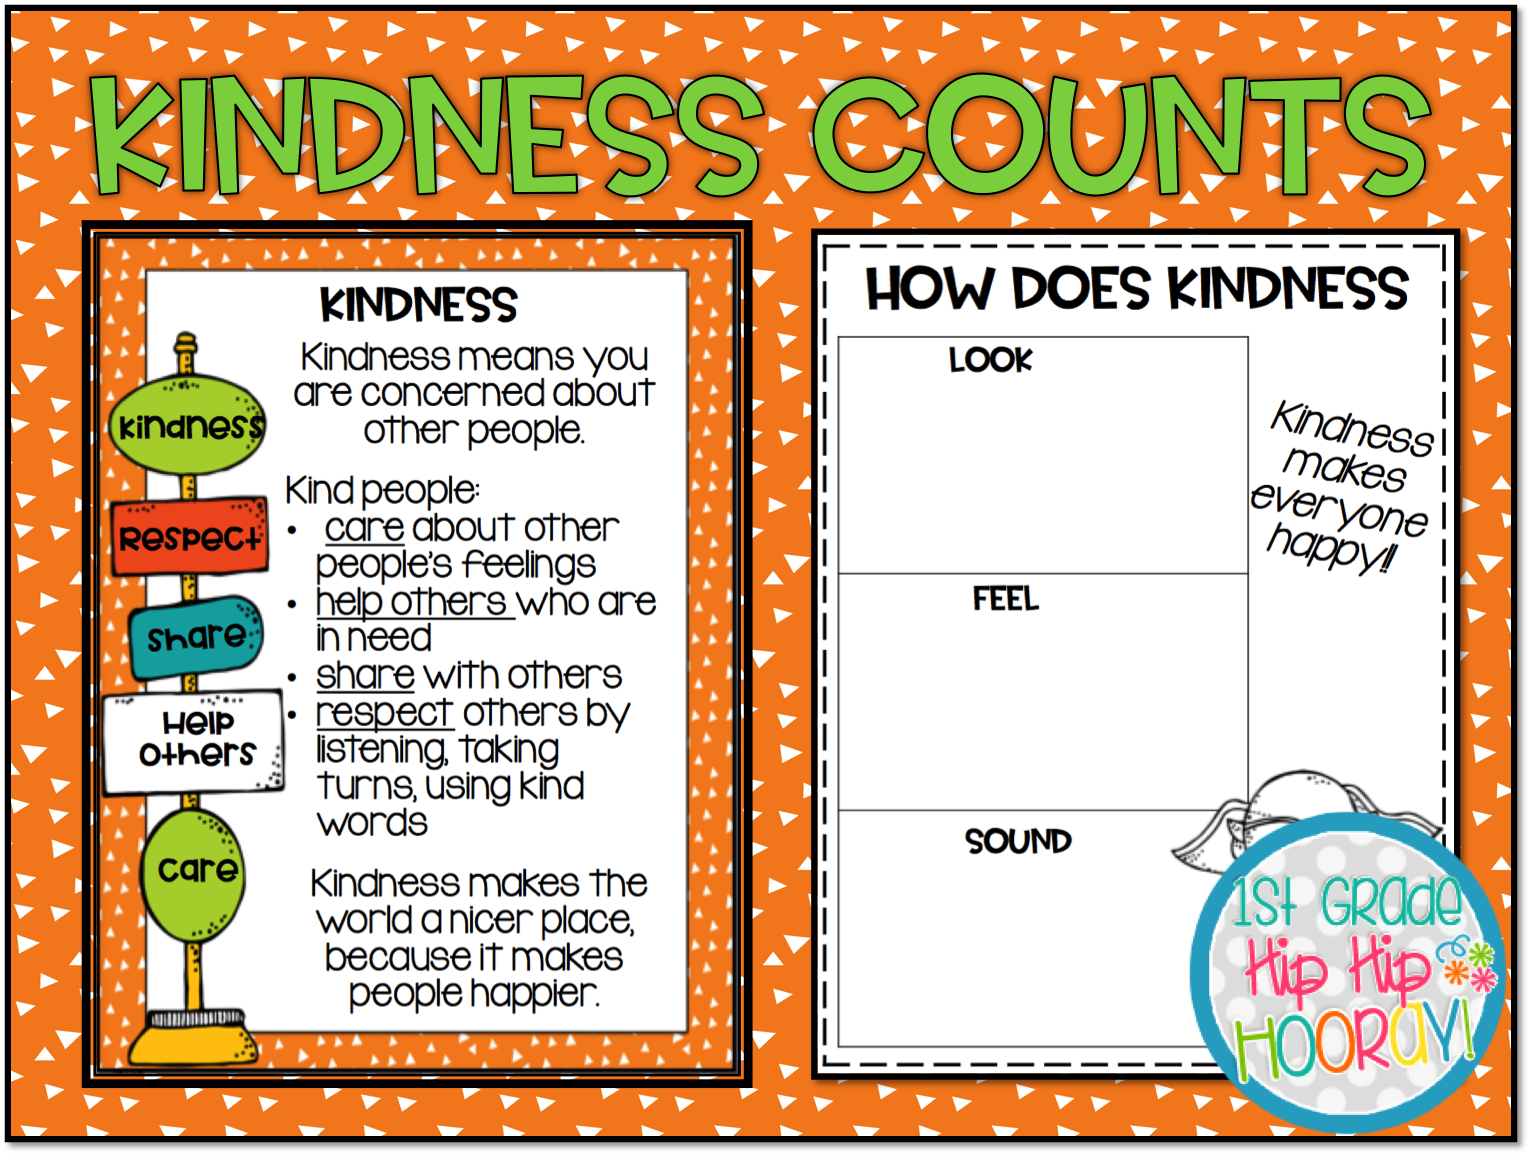 1st Grade Hip Hip Hooray!: Kindness